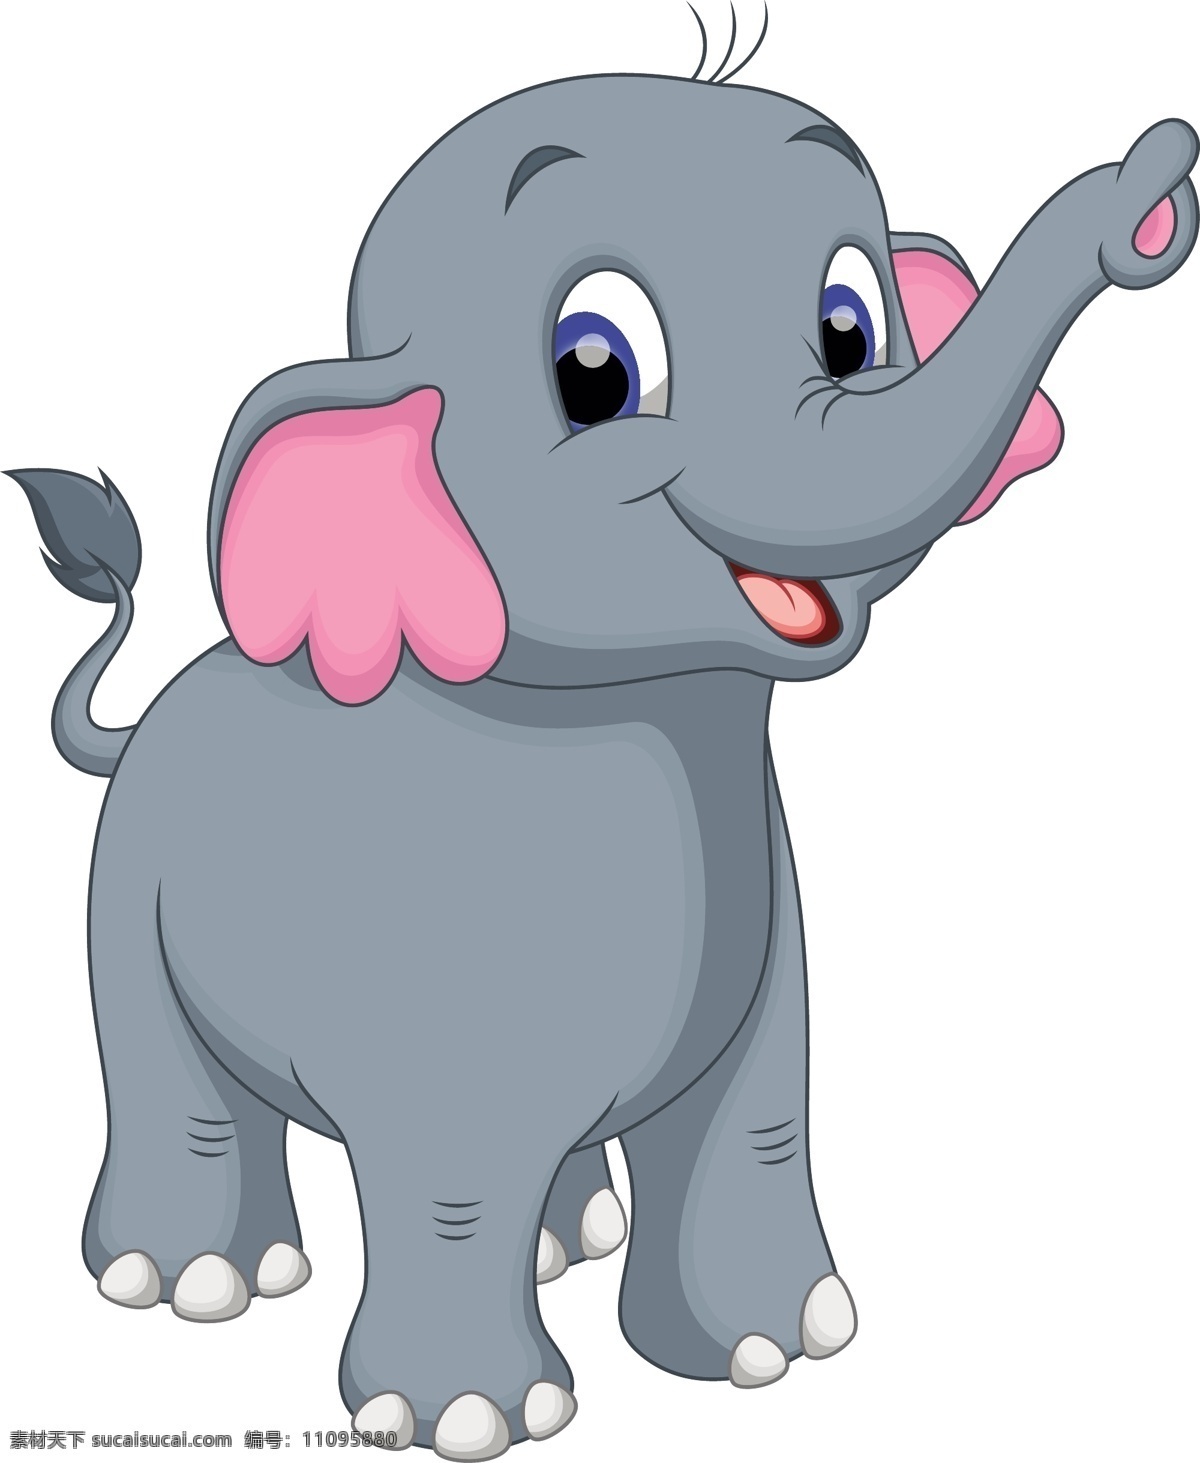 象 大象 大象标志 灰色大象 大笨象 矢量大象 卡通大象 大象卡通画 大象素材 象素材 矢量象 卡通象 卡通动物 动物元素 手绘大象 大象插画 动物 动物图案 动物图标 大象图标 平面素材